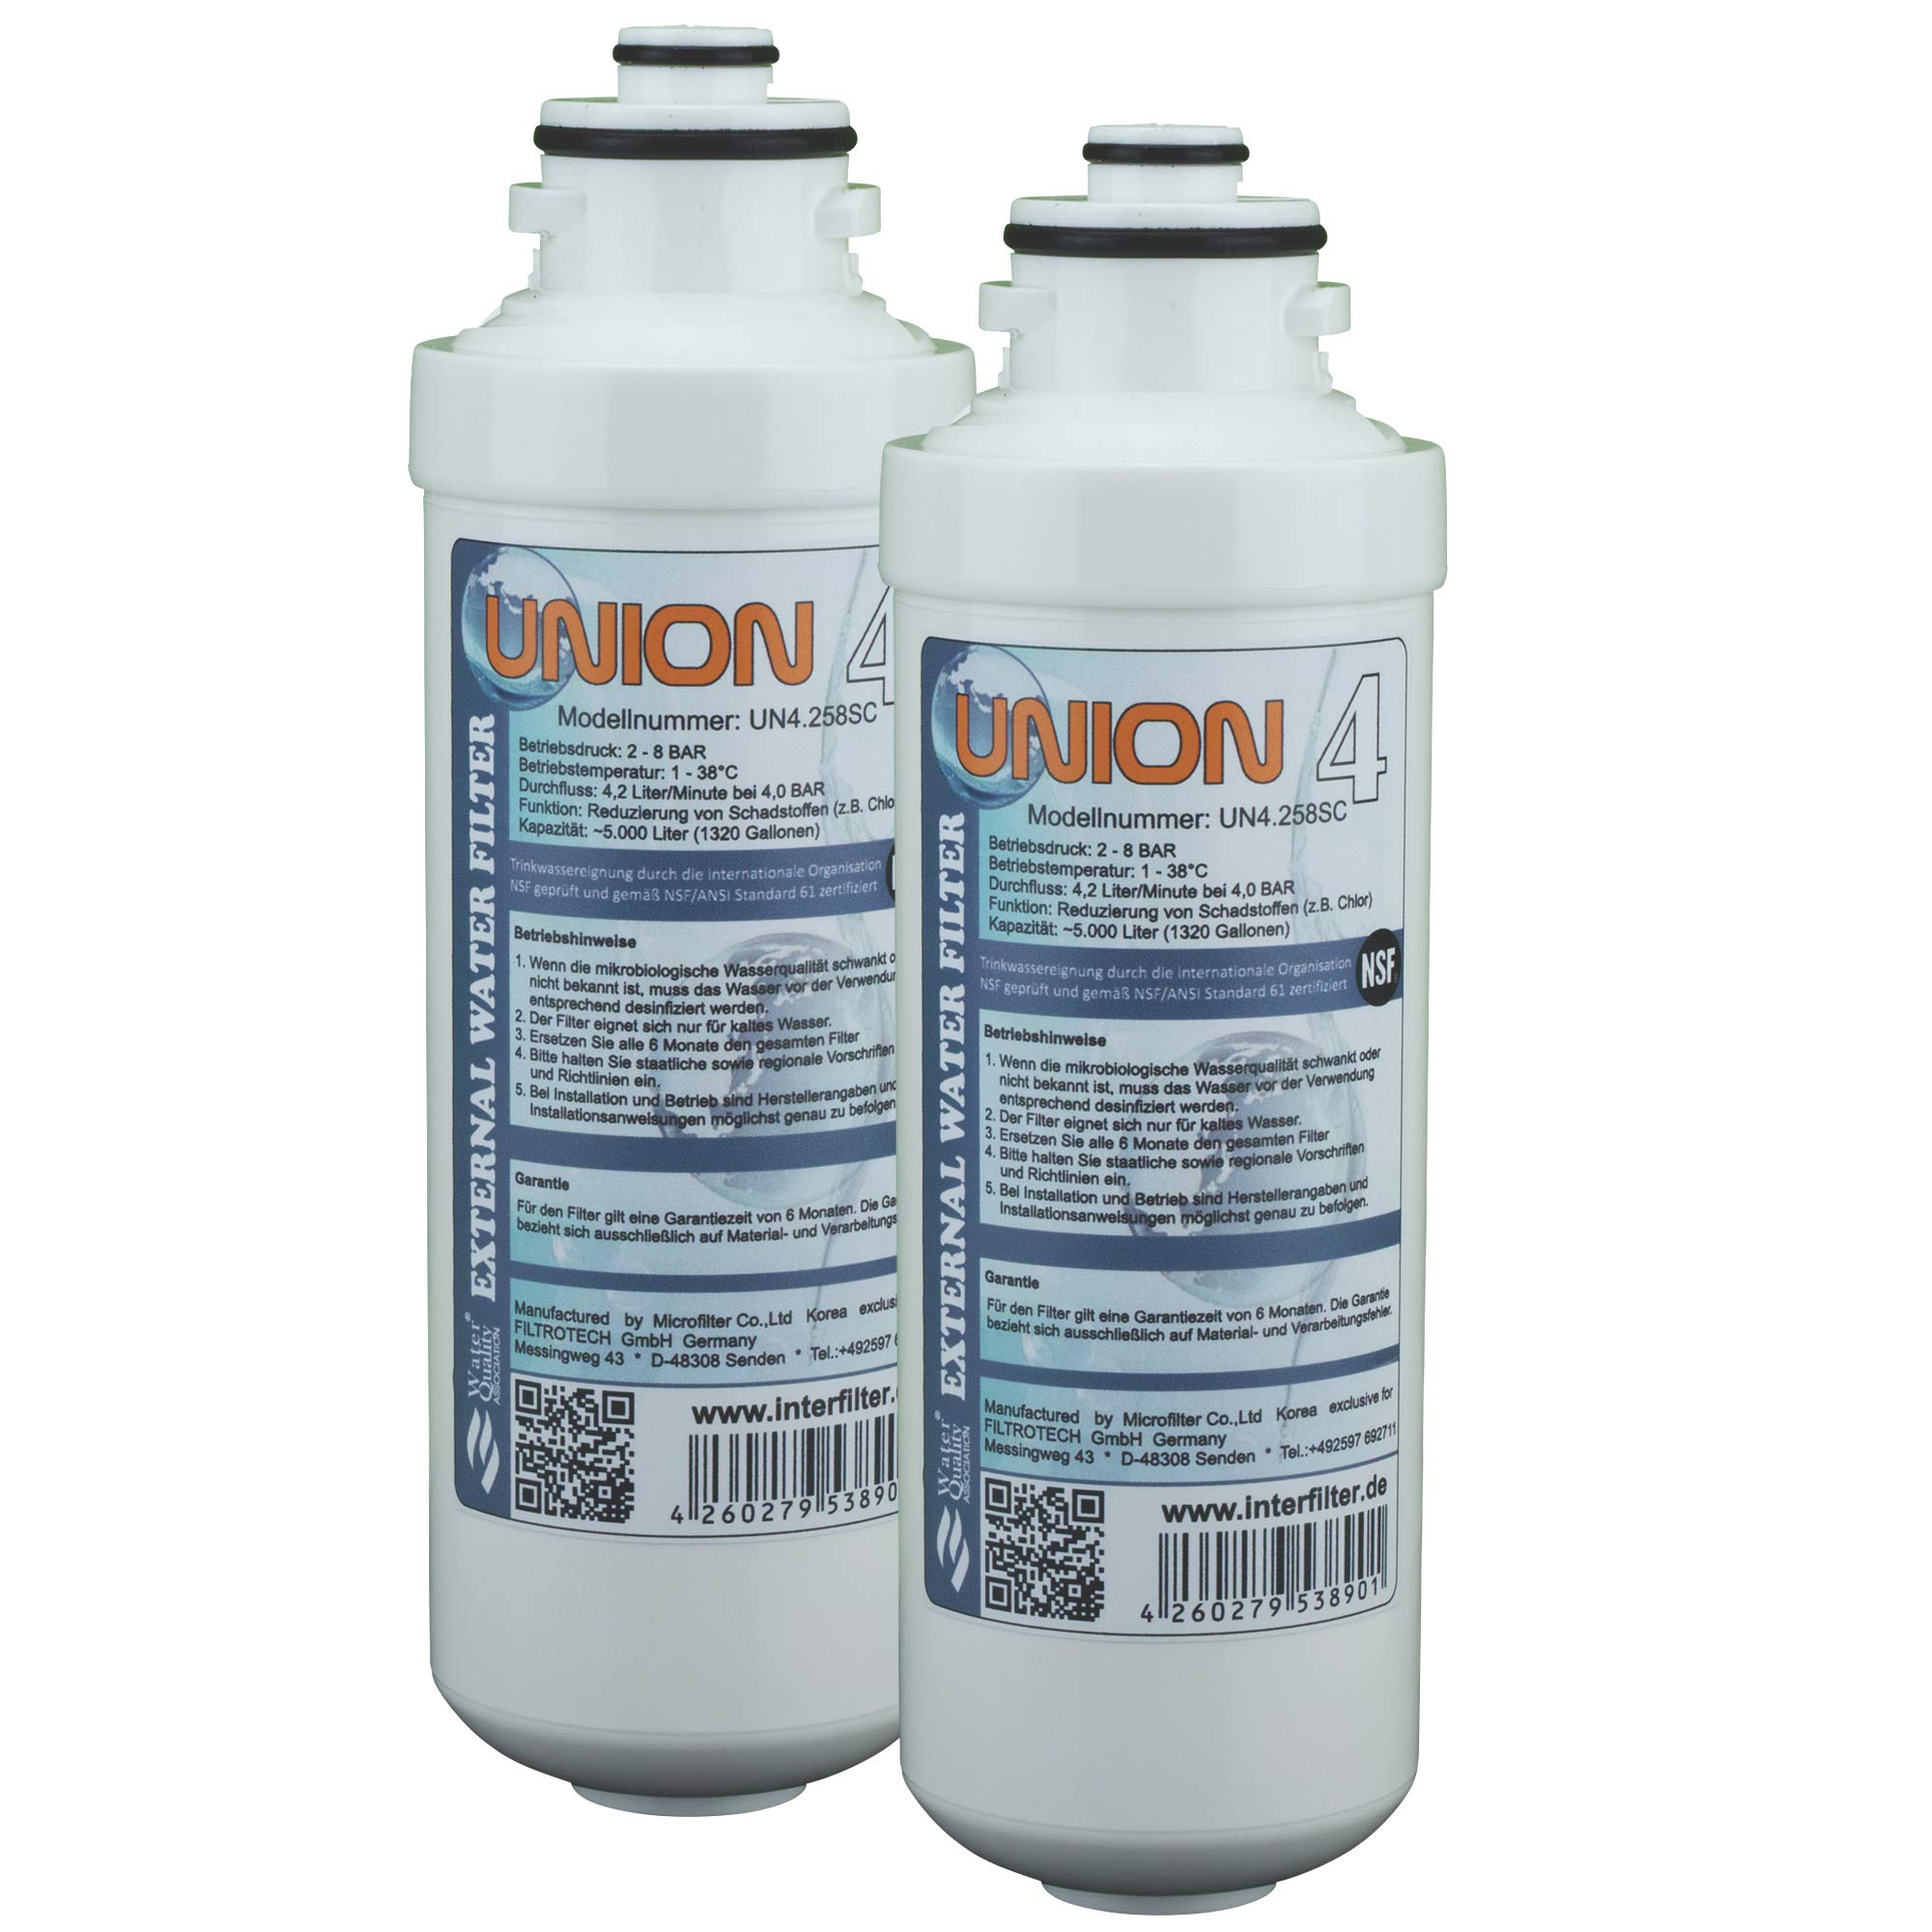 Ersatzkartusche für Wasserfilter "Union 4" Externer Kühlschrankfilter für SbS Kühlschrank. Filter Pack ohne Kopf (2-er Pack)